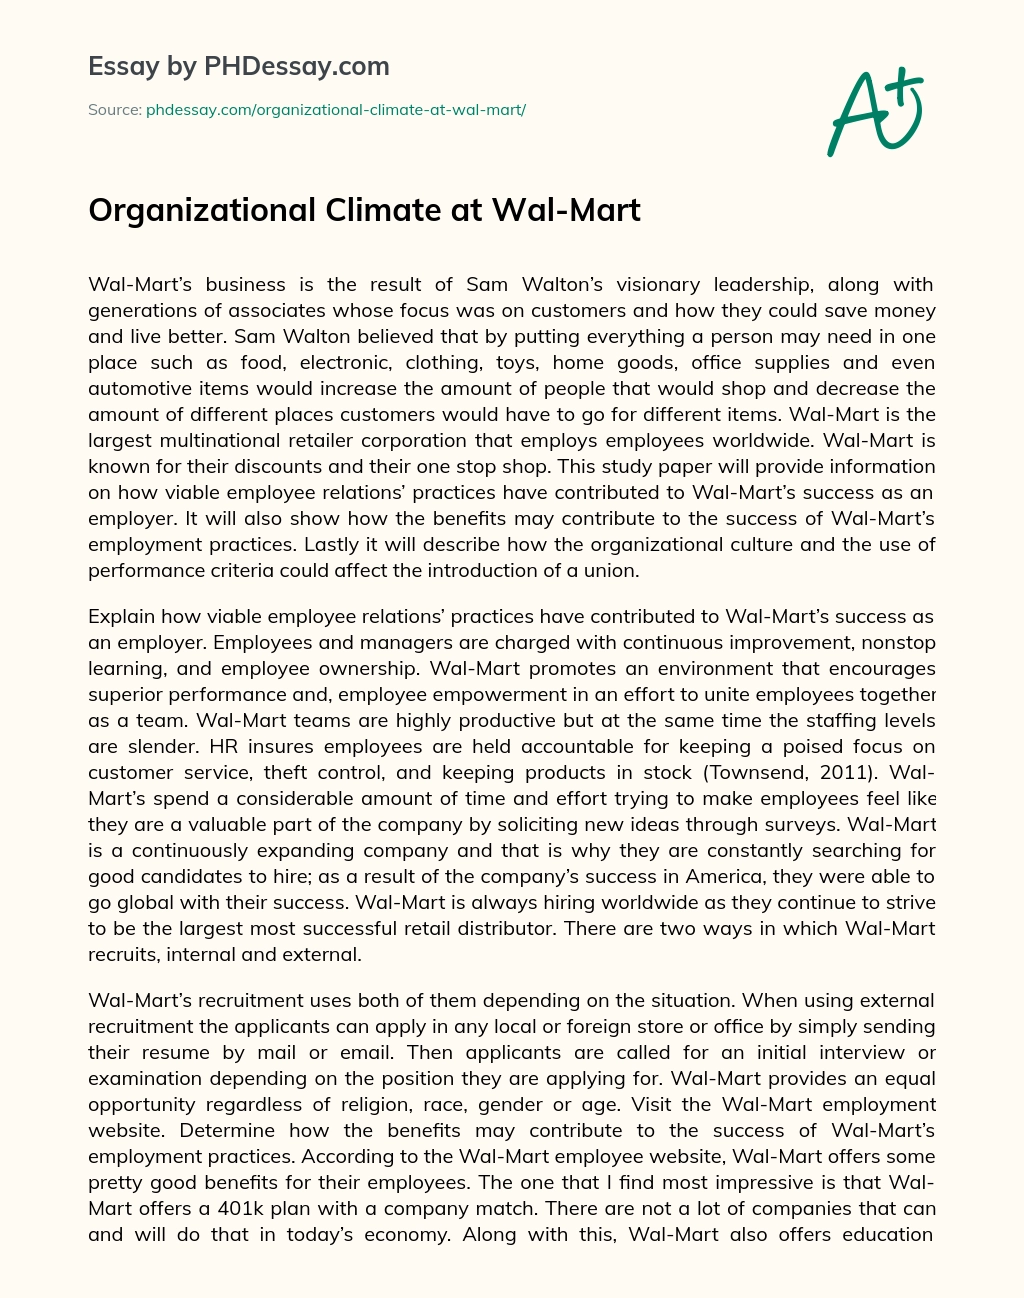 Organizational Climate at Wal-Mart essay